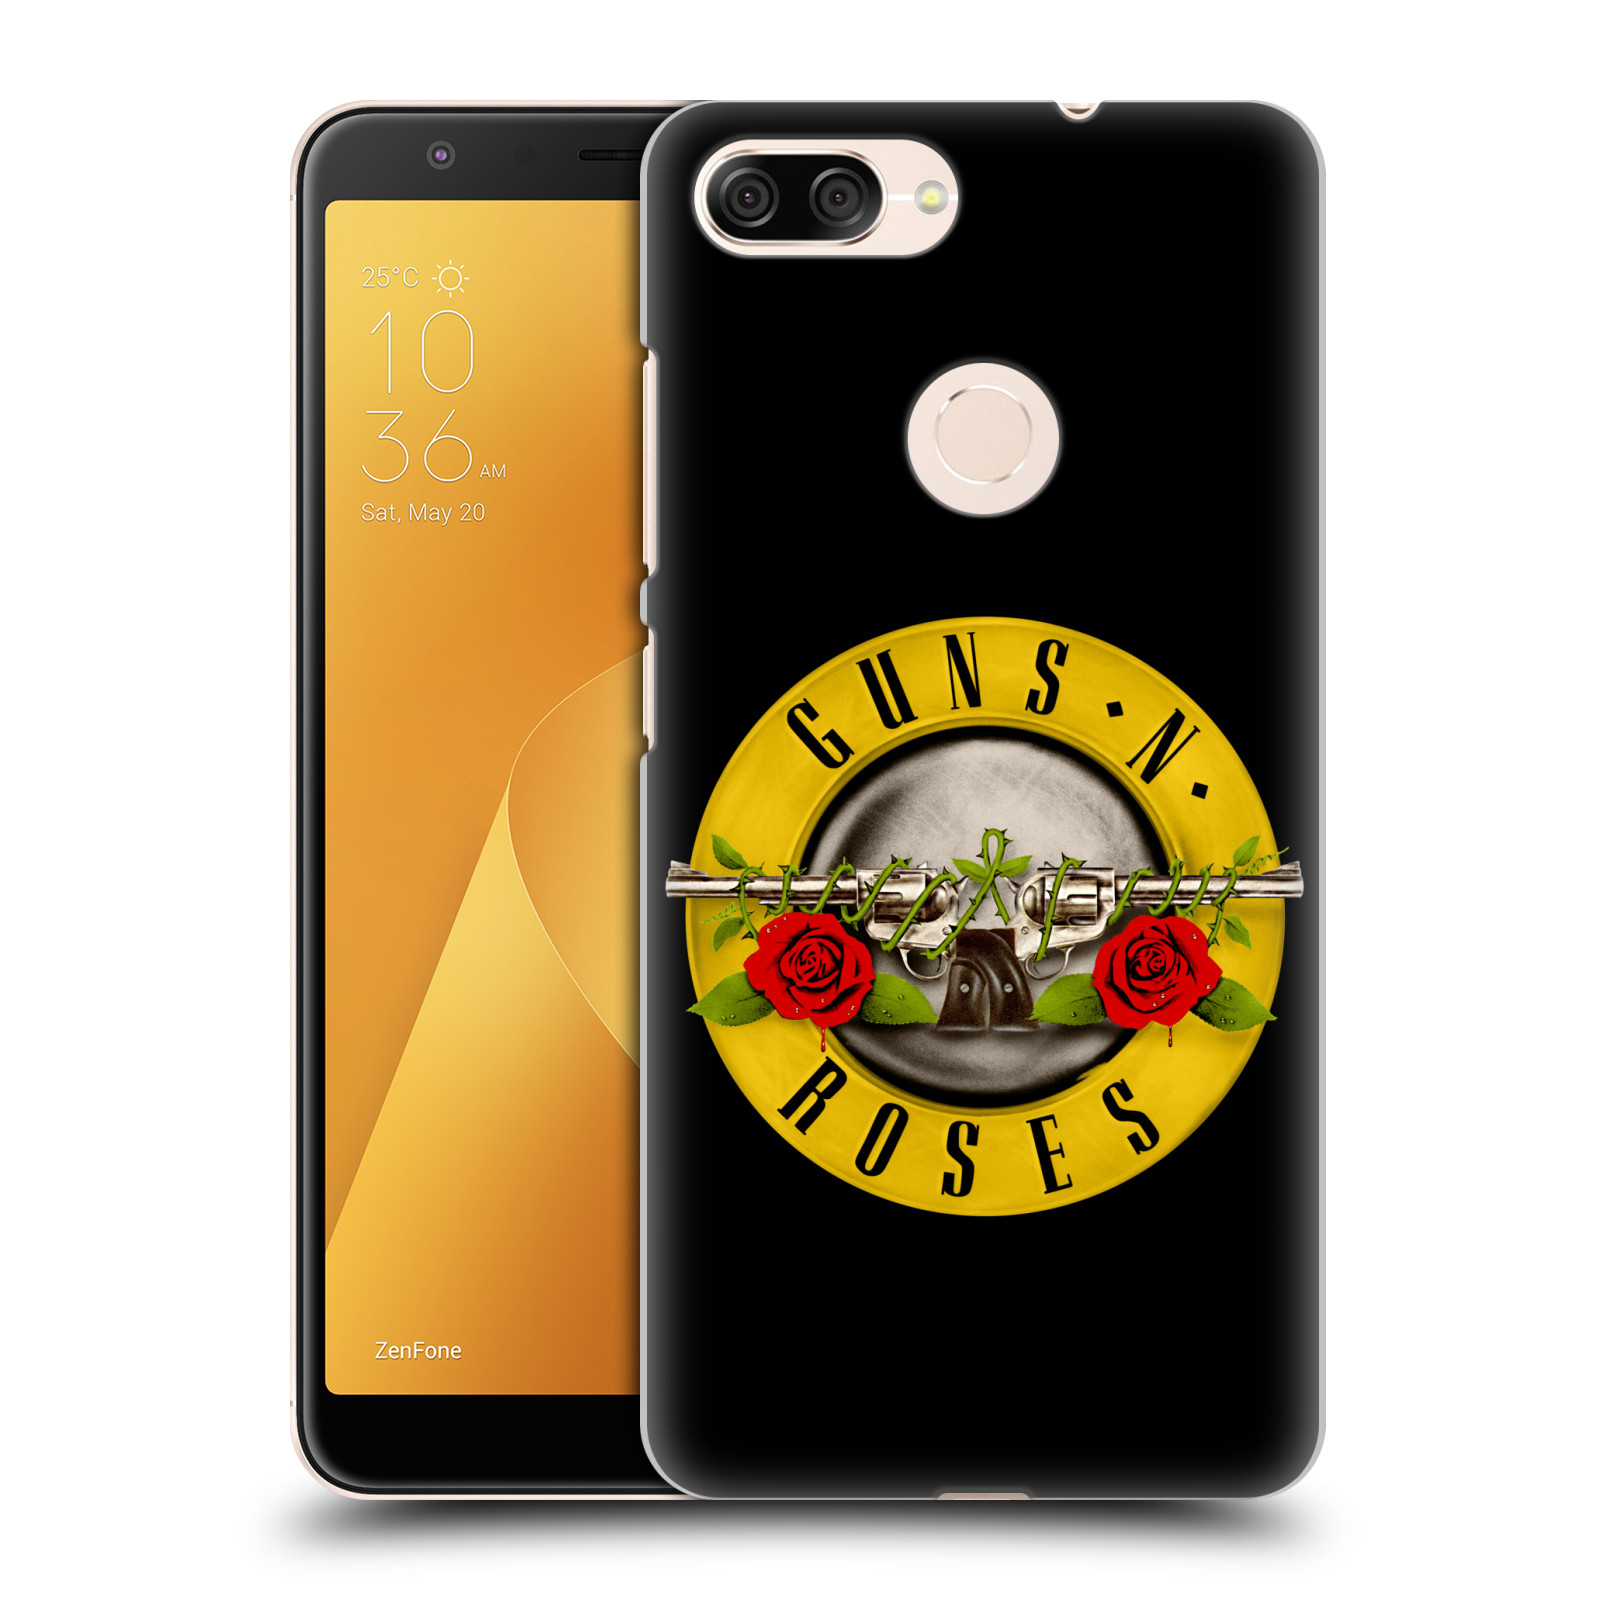 Zadní obal pro mobil Asus Zenfone Max Plus (M1) - HEAD CASE - Rocková skupina Guns N Roses Logo